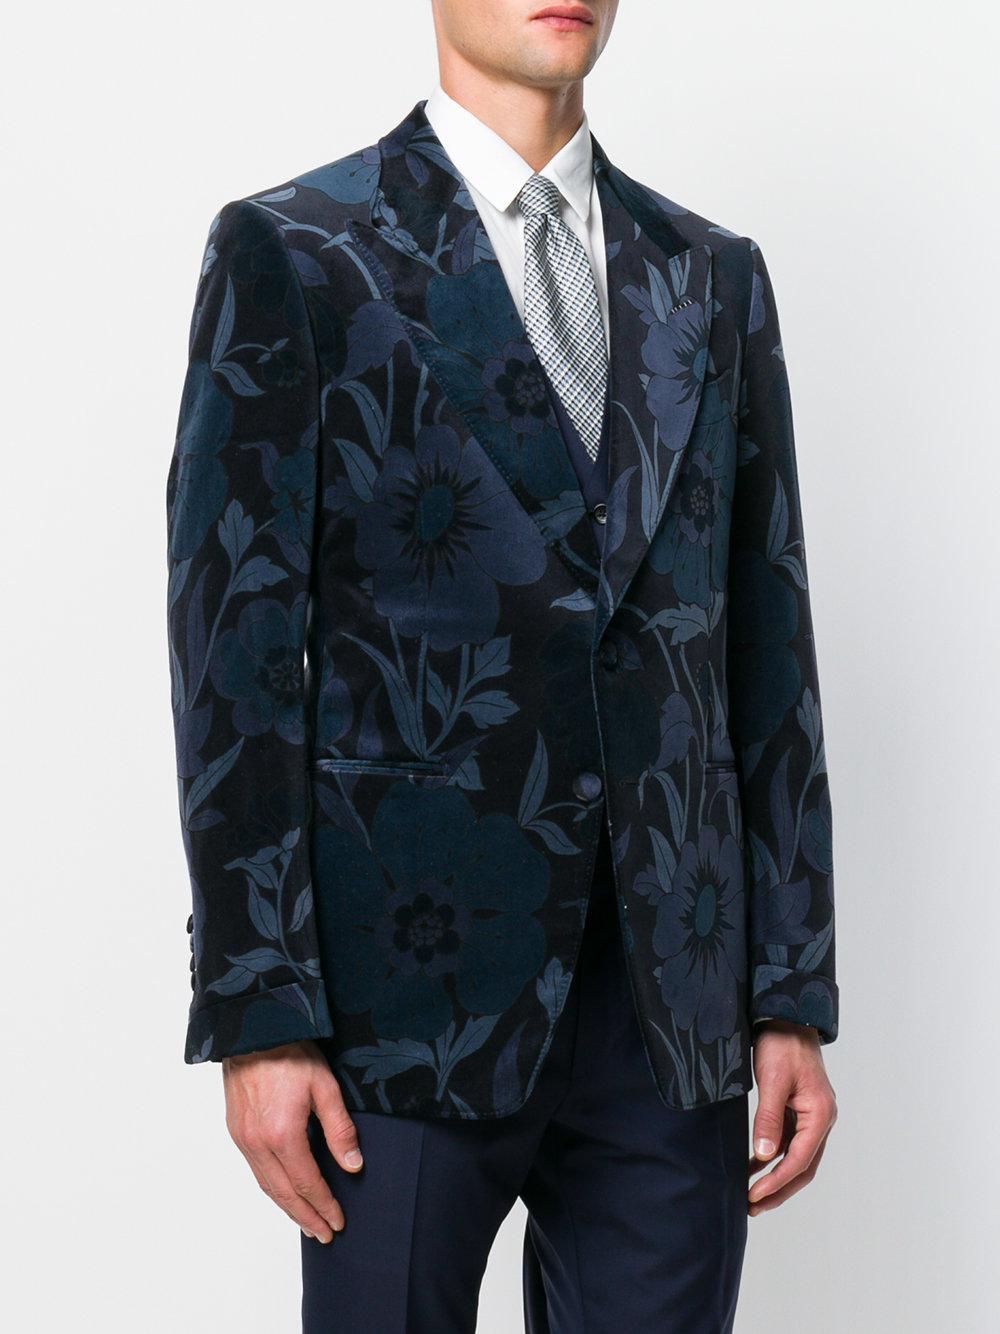 Tom Ford Floral Patterned Suit Jacket in Blue for Men | Lyst